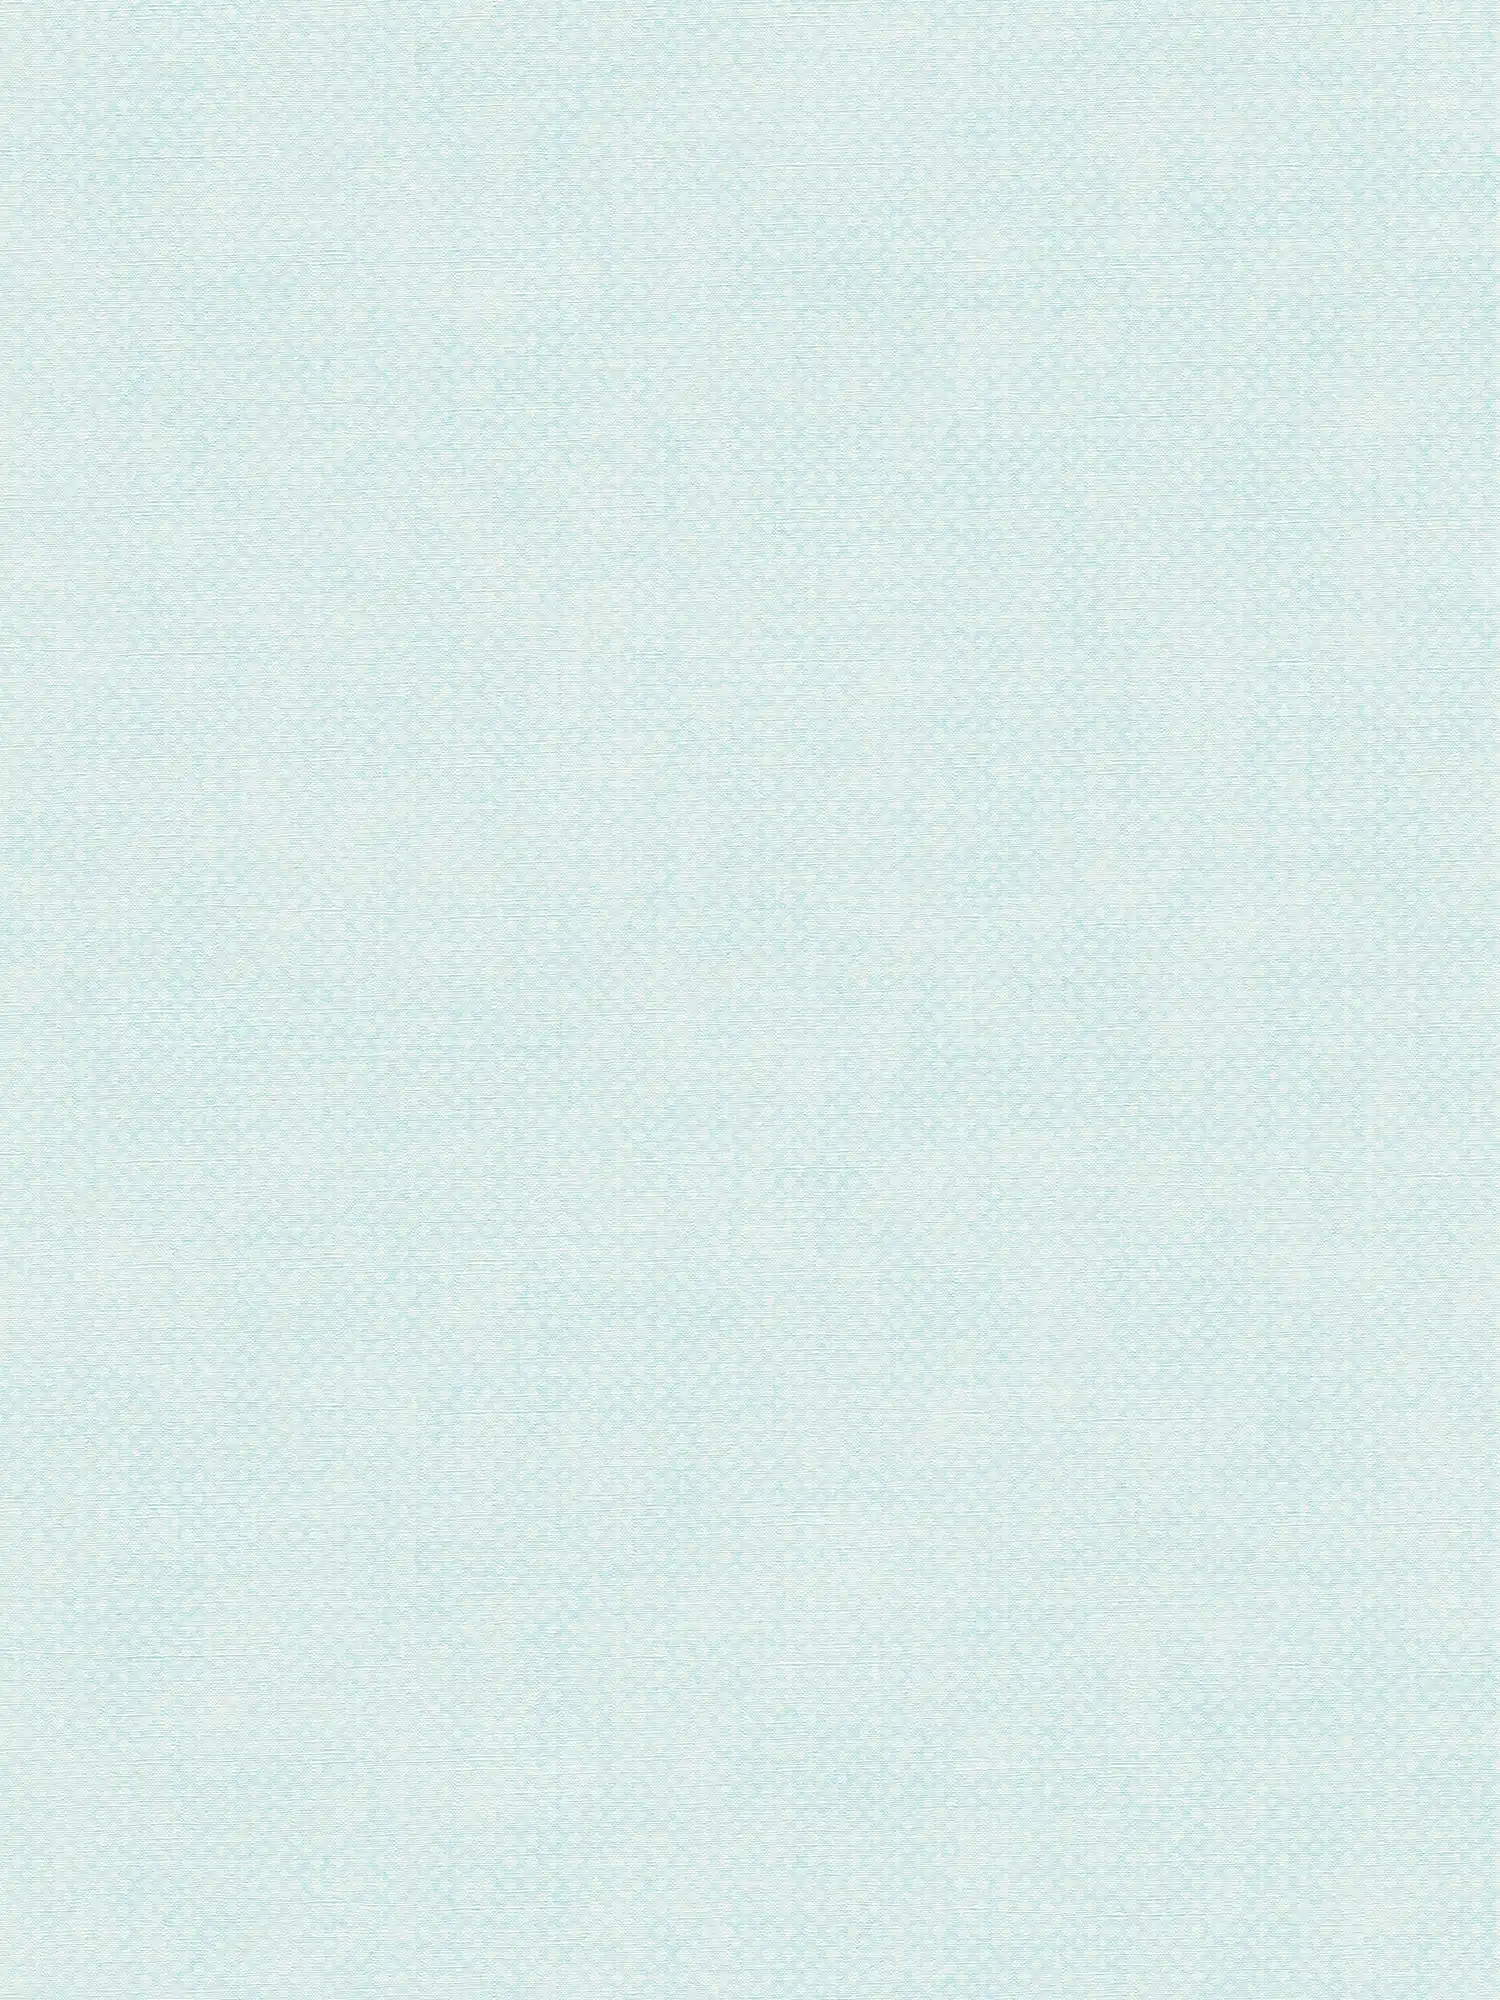 Vliesbehang met fijn structuurpatroon - blauw, wit
